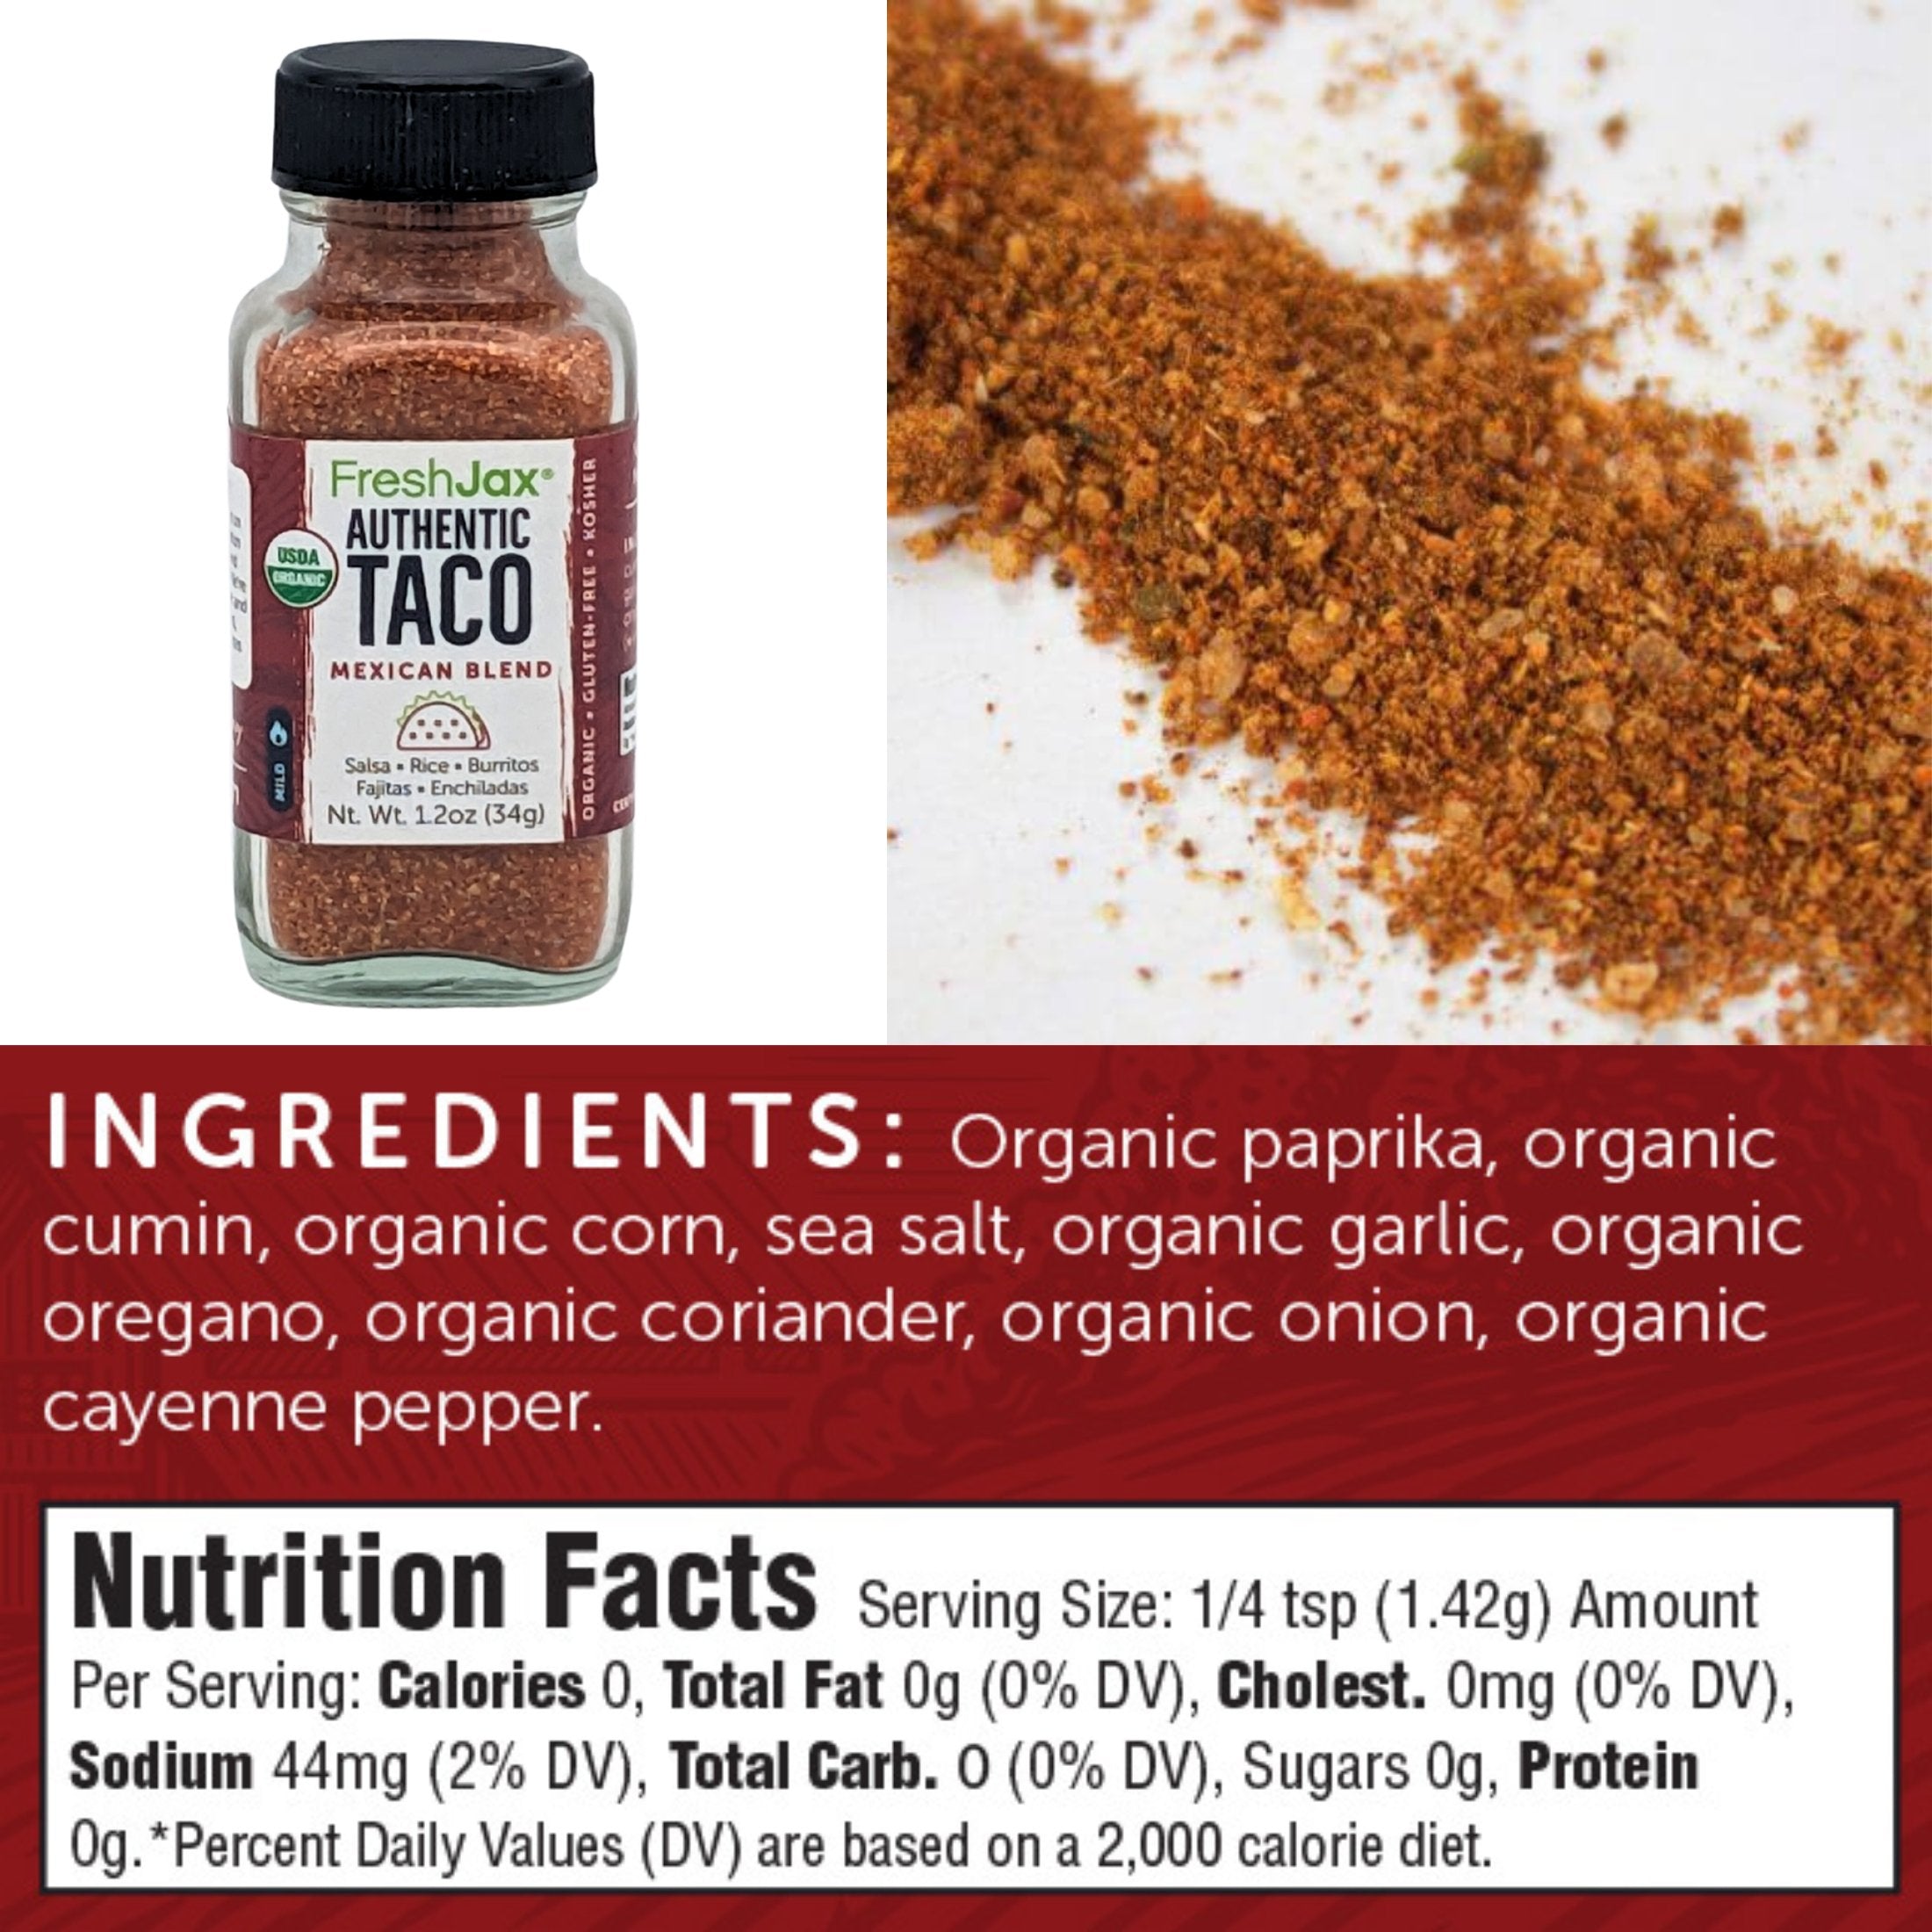 Salt-Free | Organic Taco Seasoning Blend